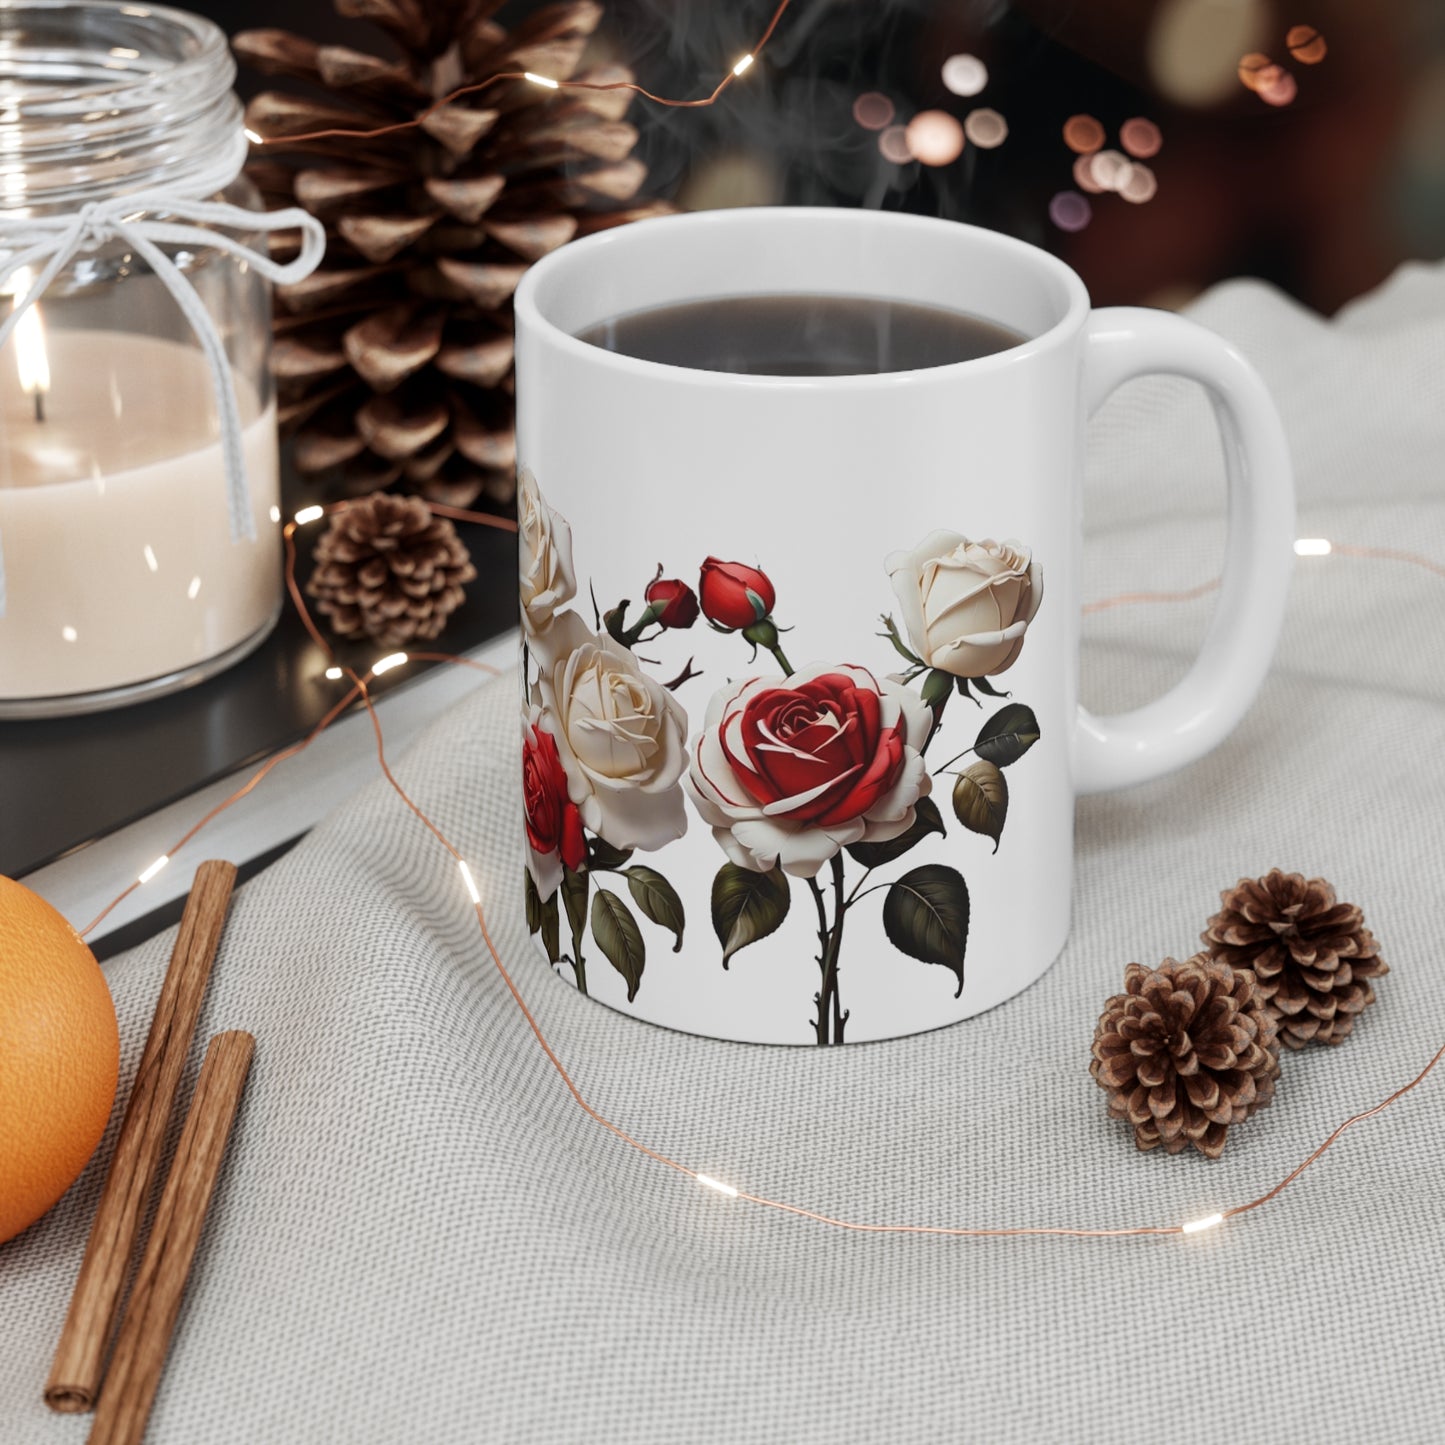 Red and White Roses Mug - Ceramic Coffee Mug 11oz